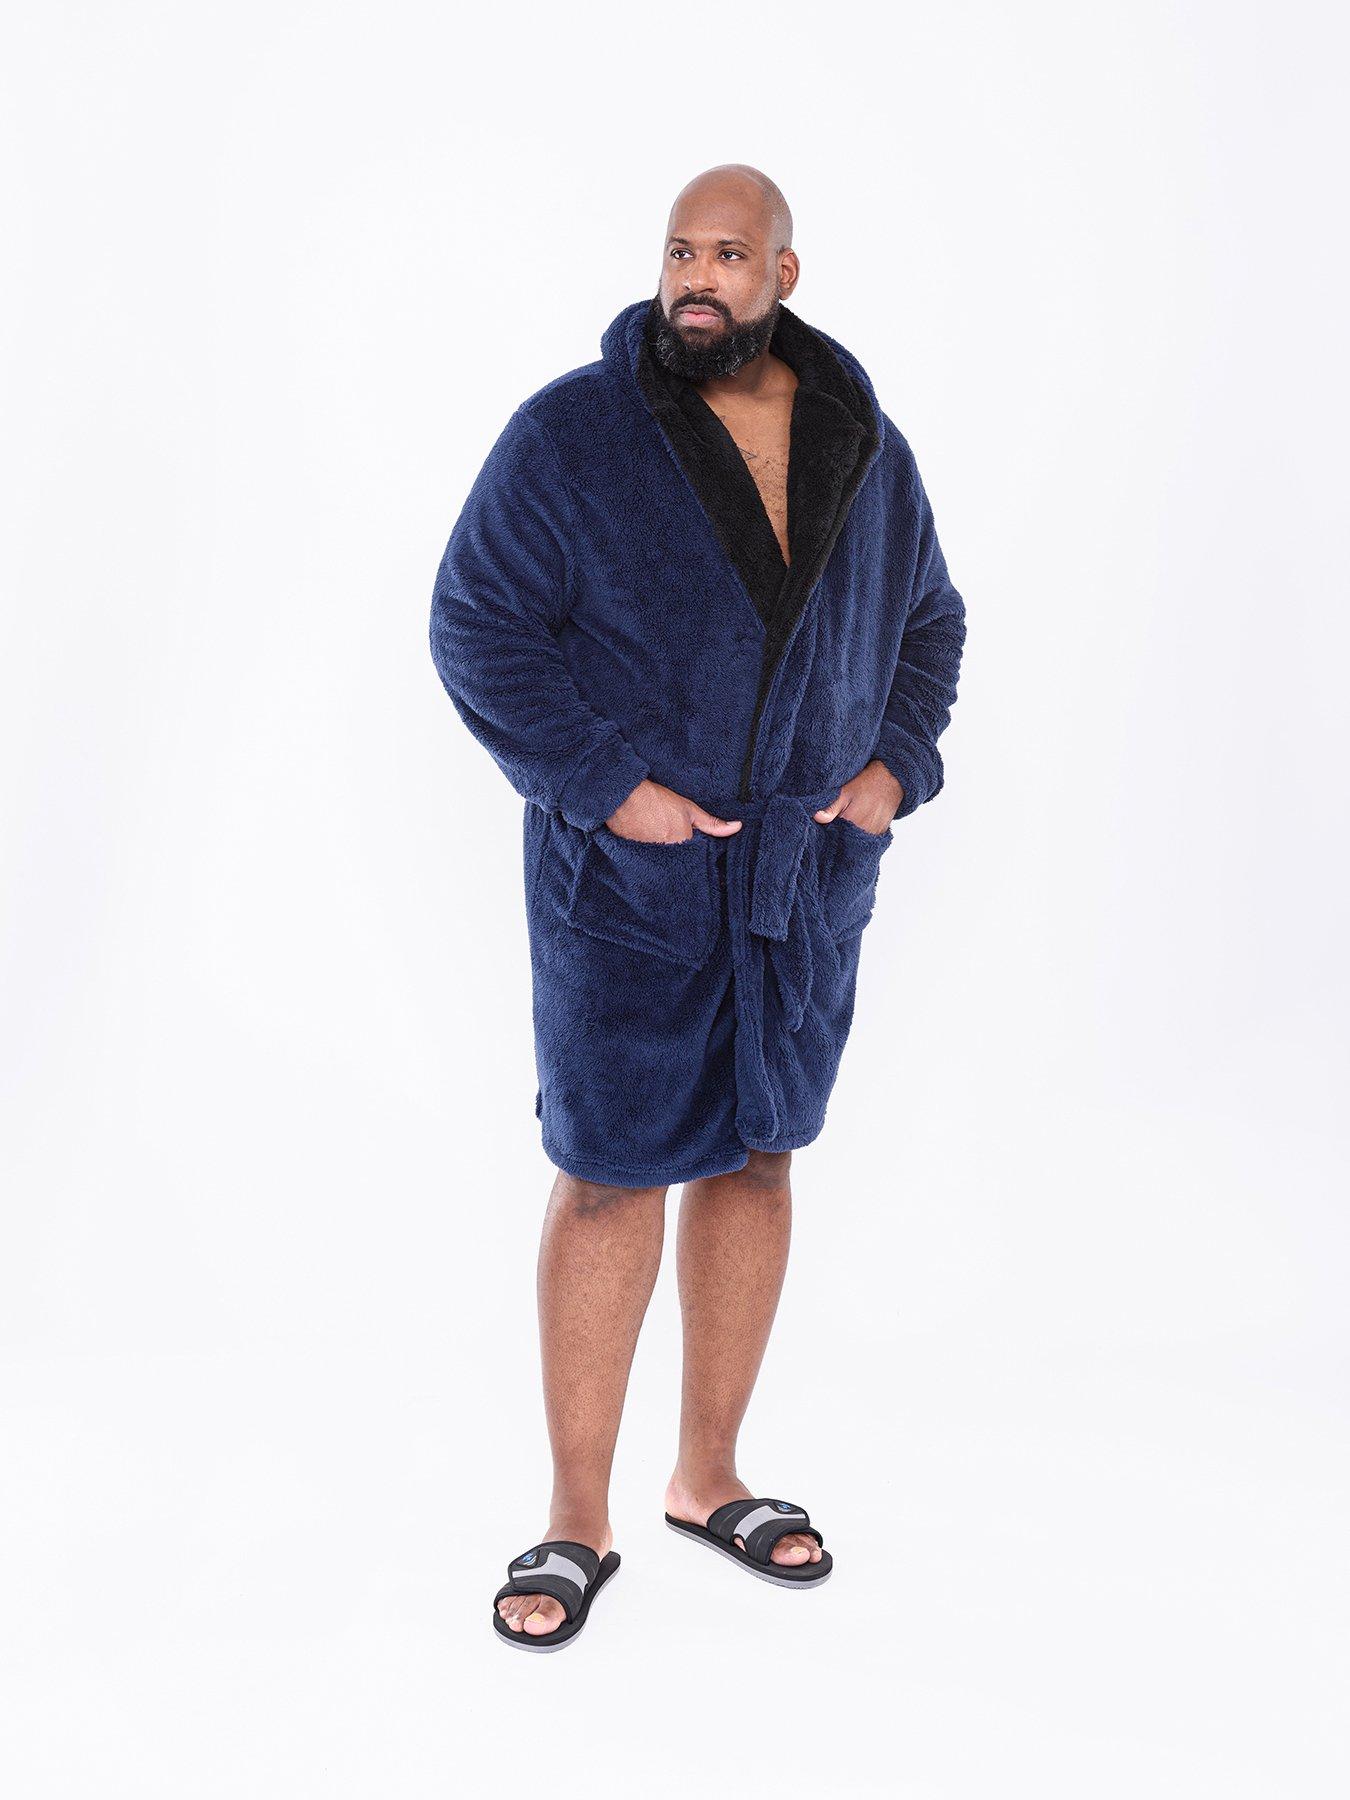 Lovers Extra Long Flannel Bathrobe Plus Size Dressing Gown Women Men Winter  Warm Coral Fleece Bath Robe Bride Cozy Sleepwear Spa - AliExpress